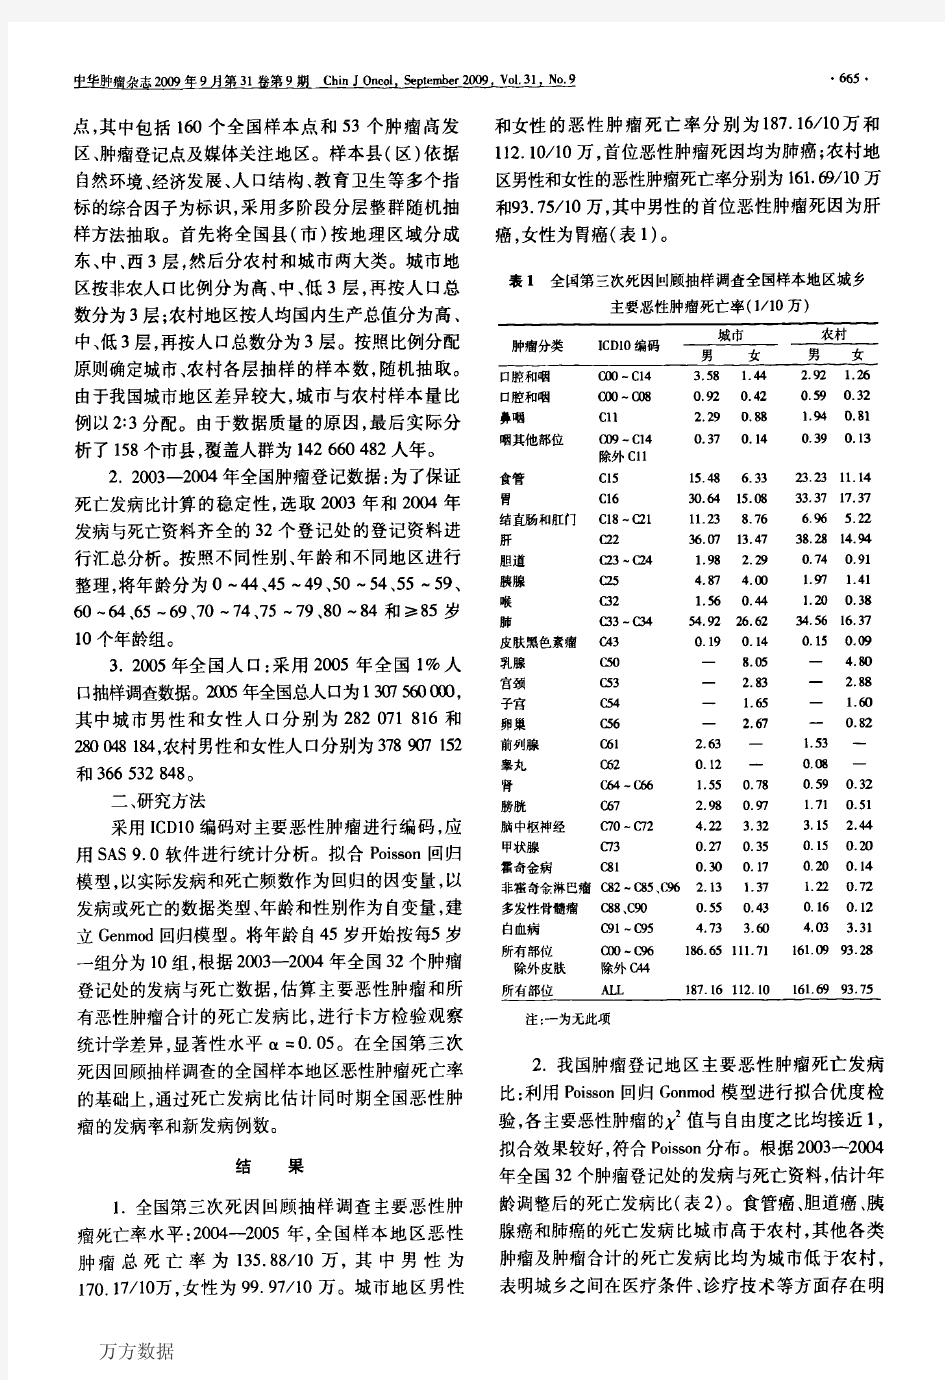 2004-2012年中国恶性肿瘤发病和死亡分析-汇总资料